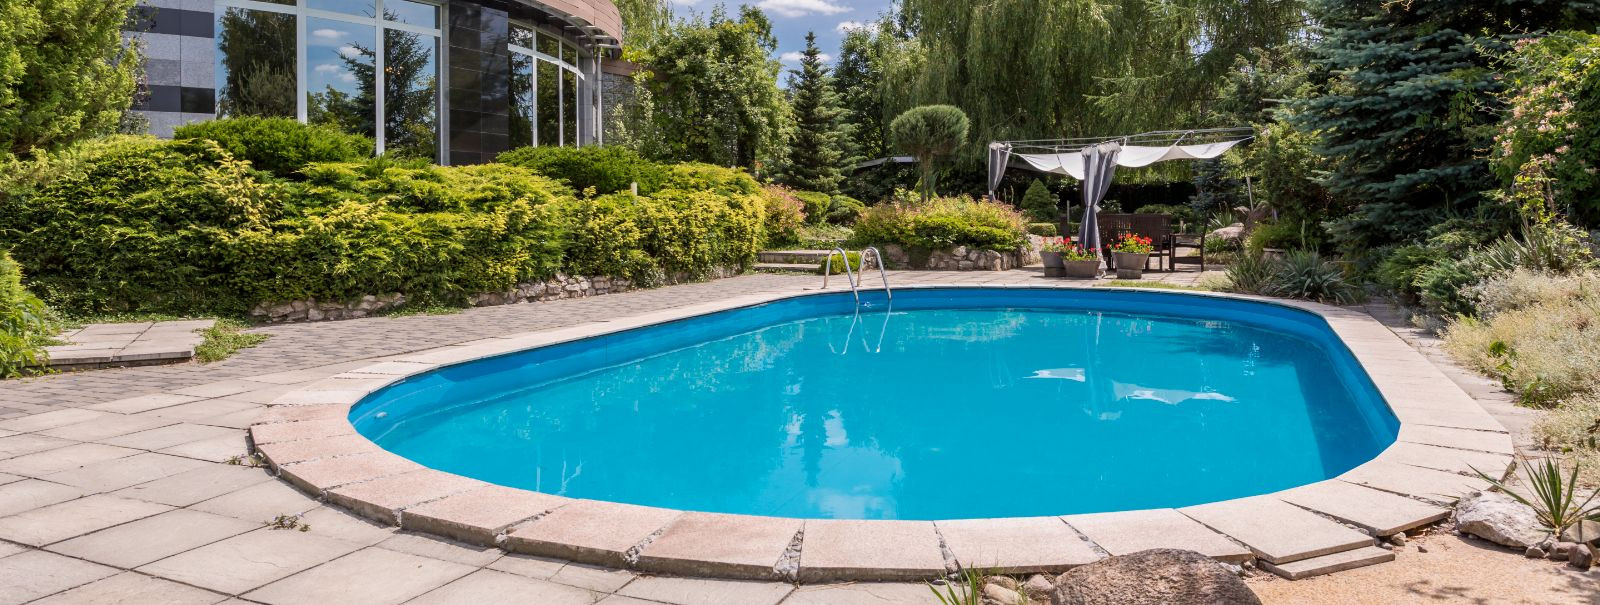 Kui olete majaomanik, on teie bassein lõõgastumise ja pere lõbu keskpunkt. Kuid aja jooksul võivad isegi kõige paremini hooldatud basseinid vananemise märke näi